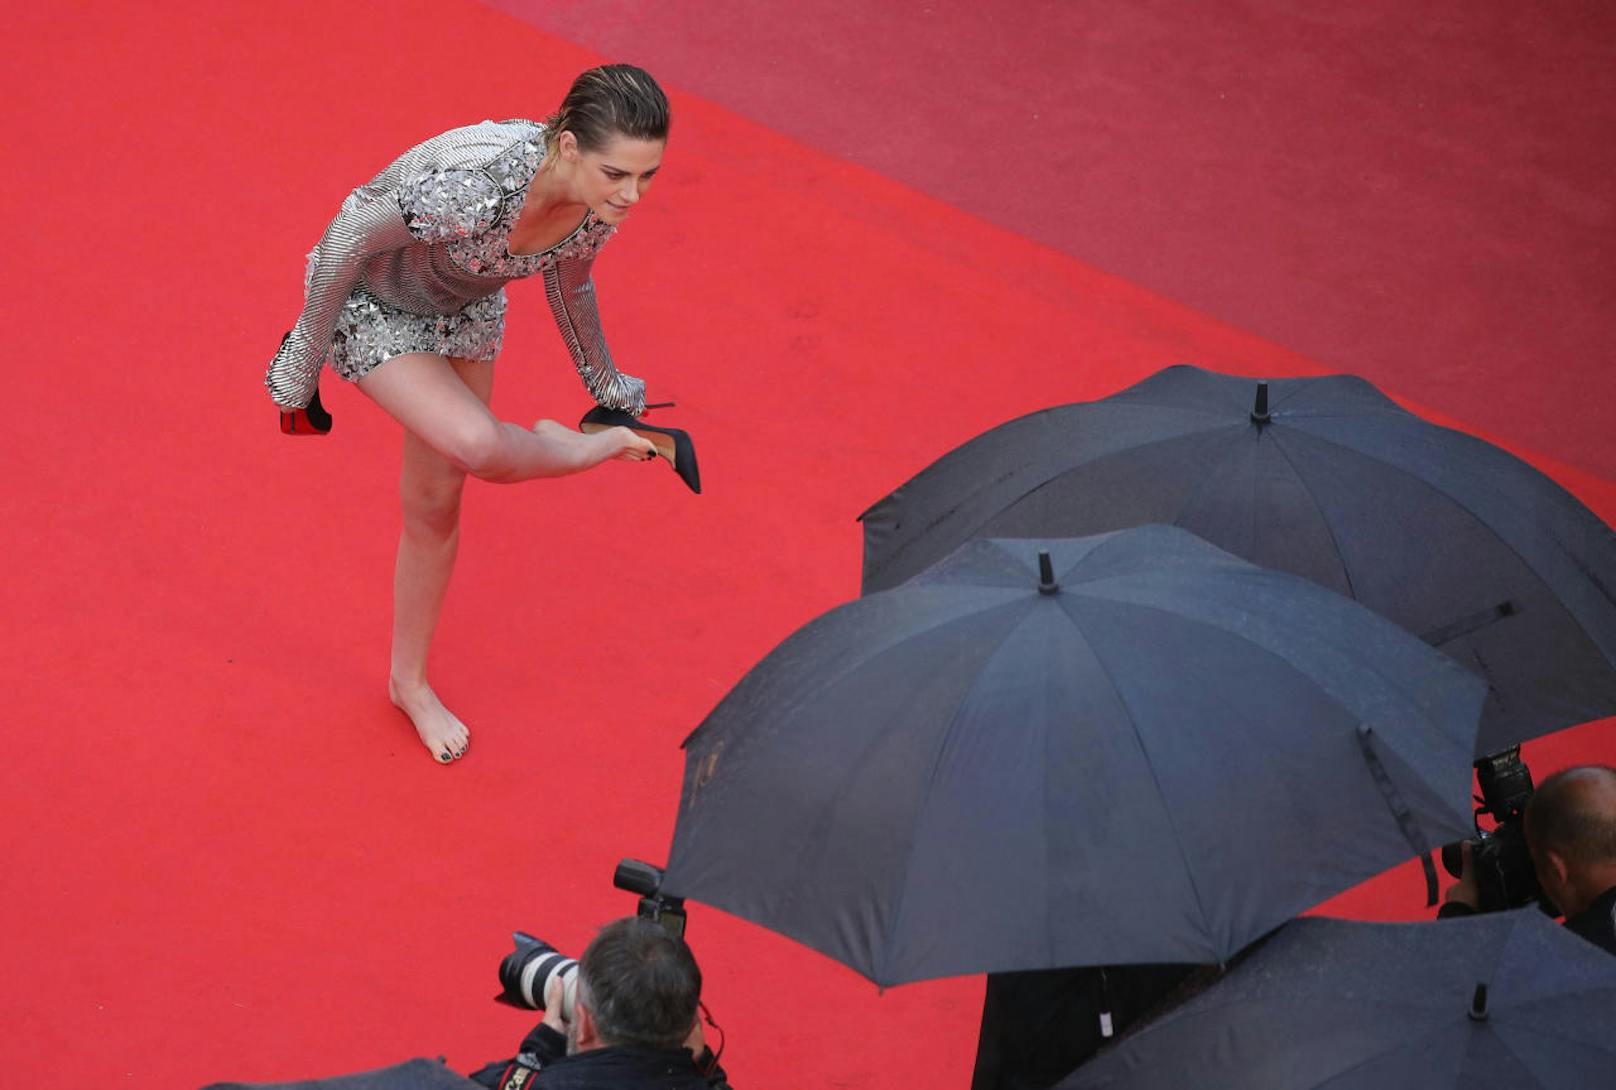 Kaum waren die wichtigsten Fotos geschossen, zog die 28-Jährige ihre Louboutin-High-Heels auch schon aus.